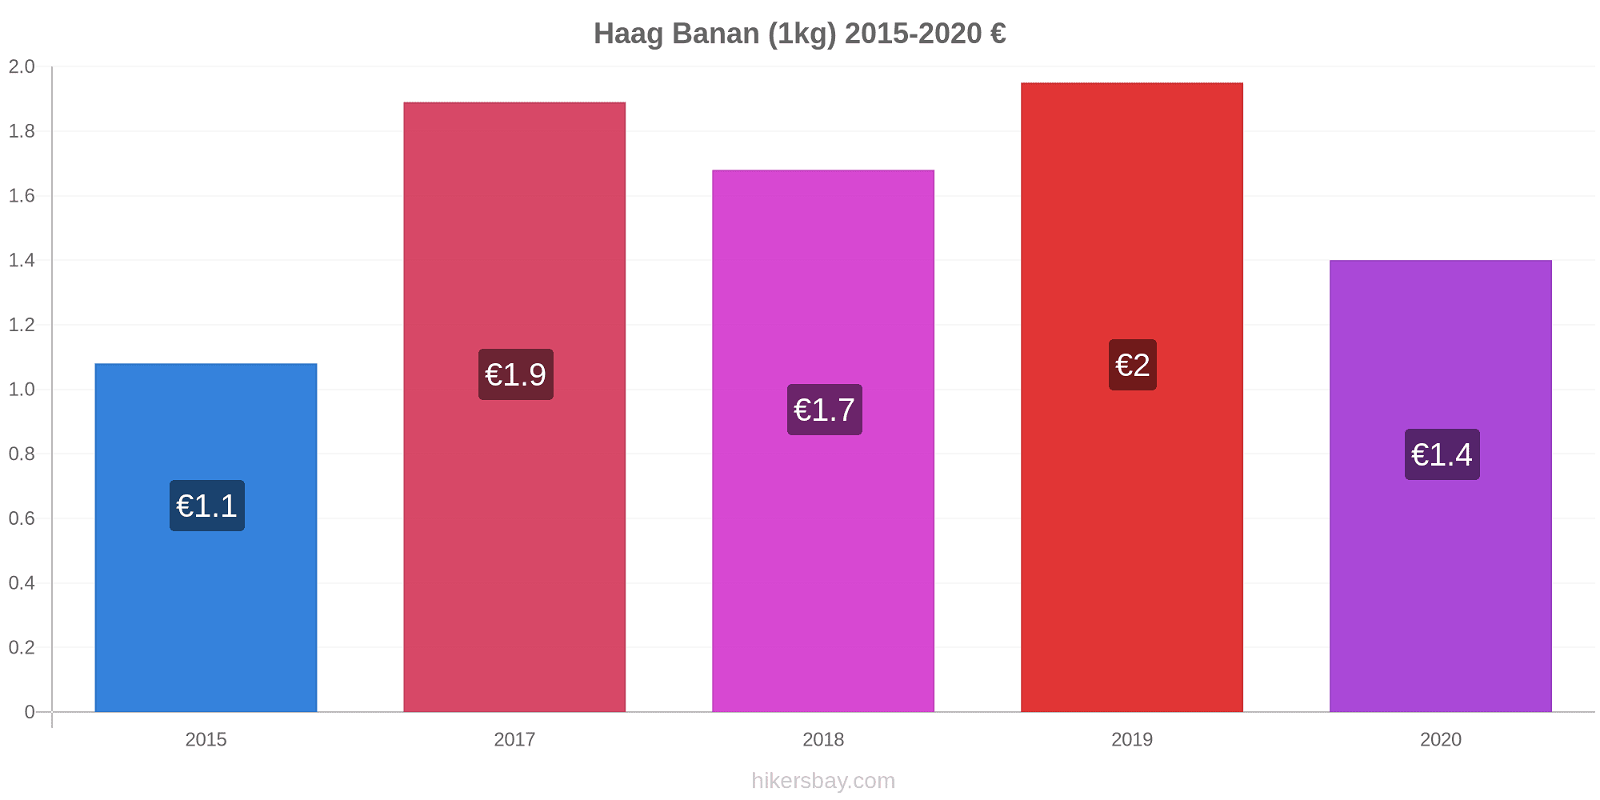 Haag prisændringer Banan (1kg) hikersbay.com